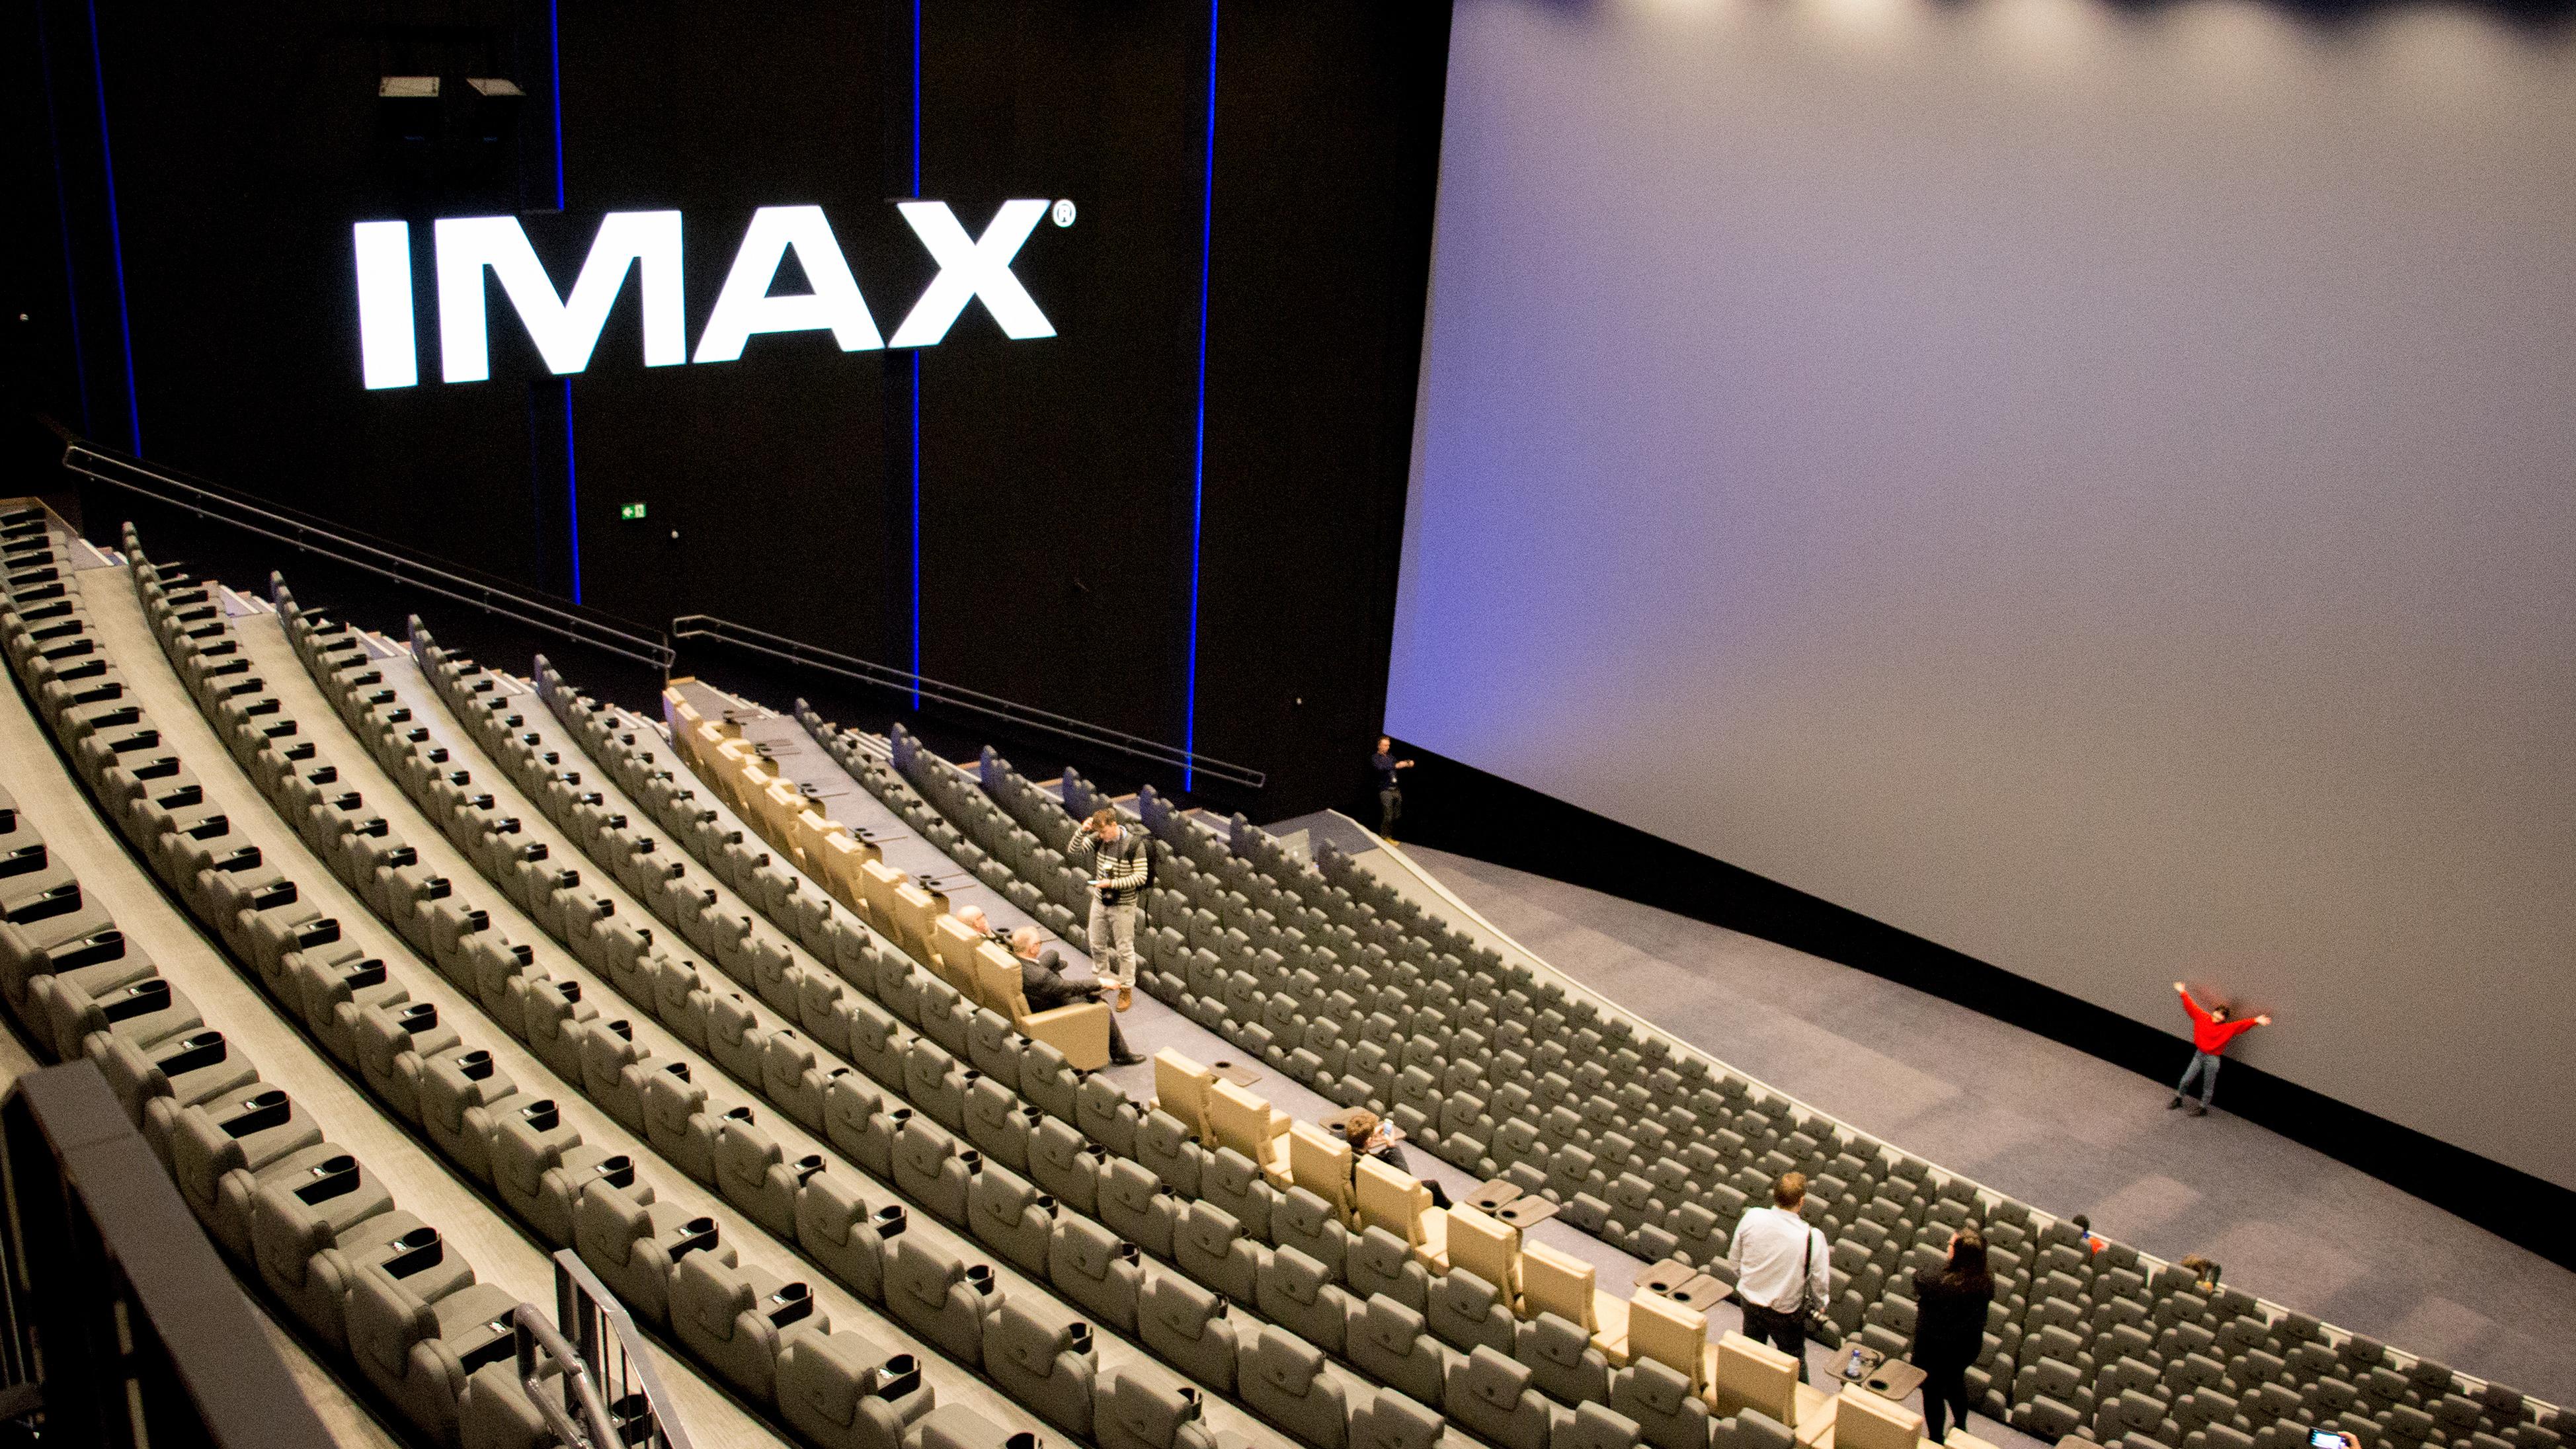 Vi har vært på Norges eneste IMAX-kino